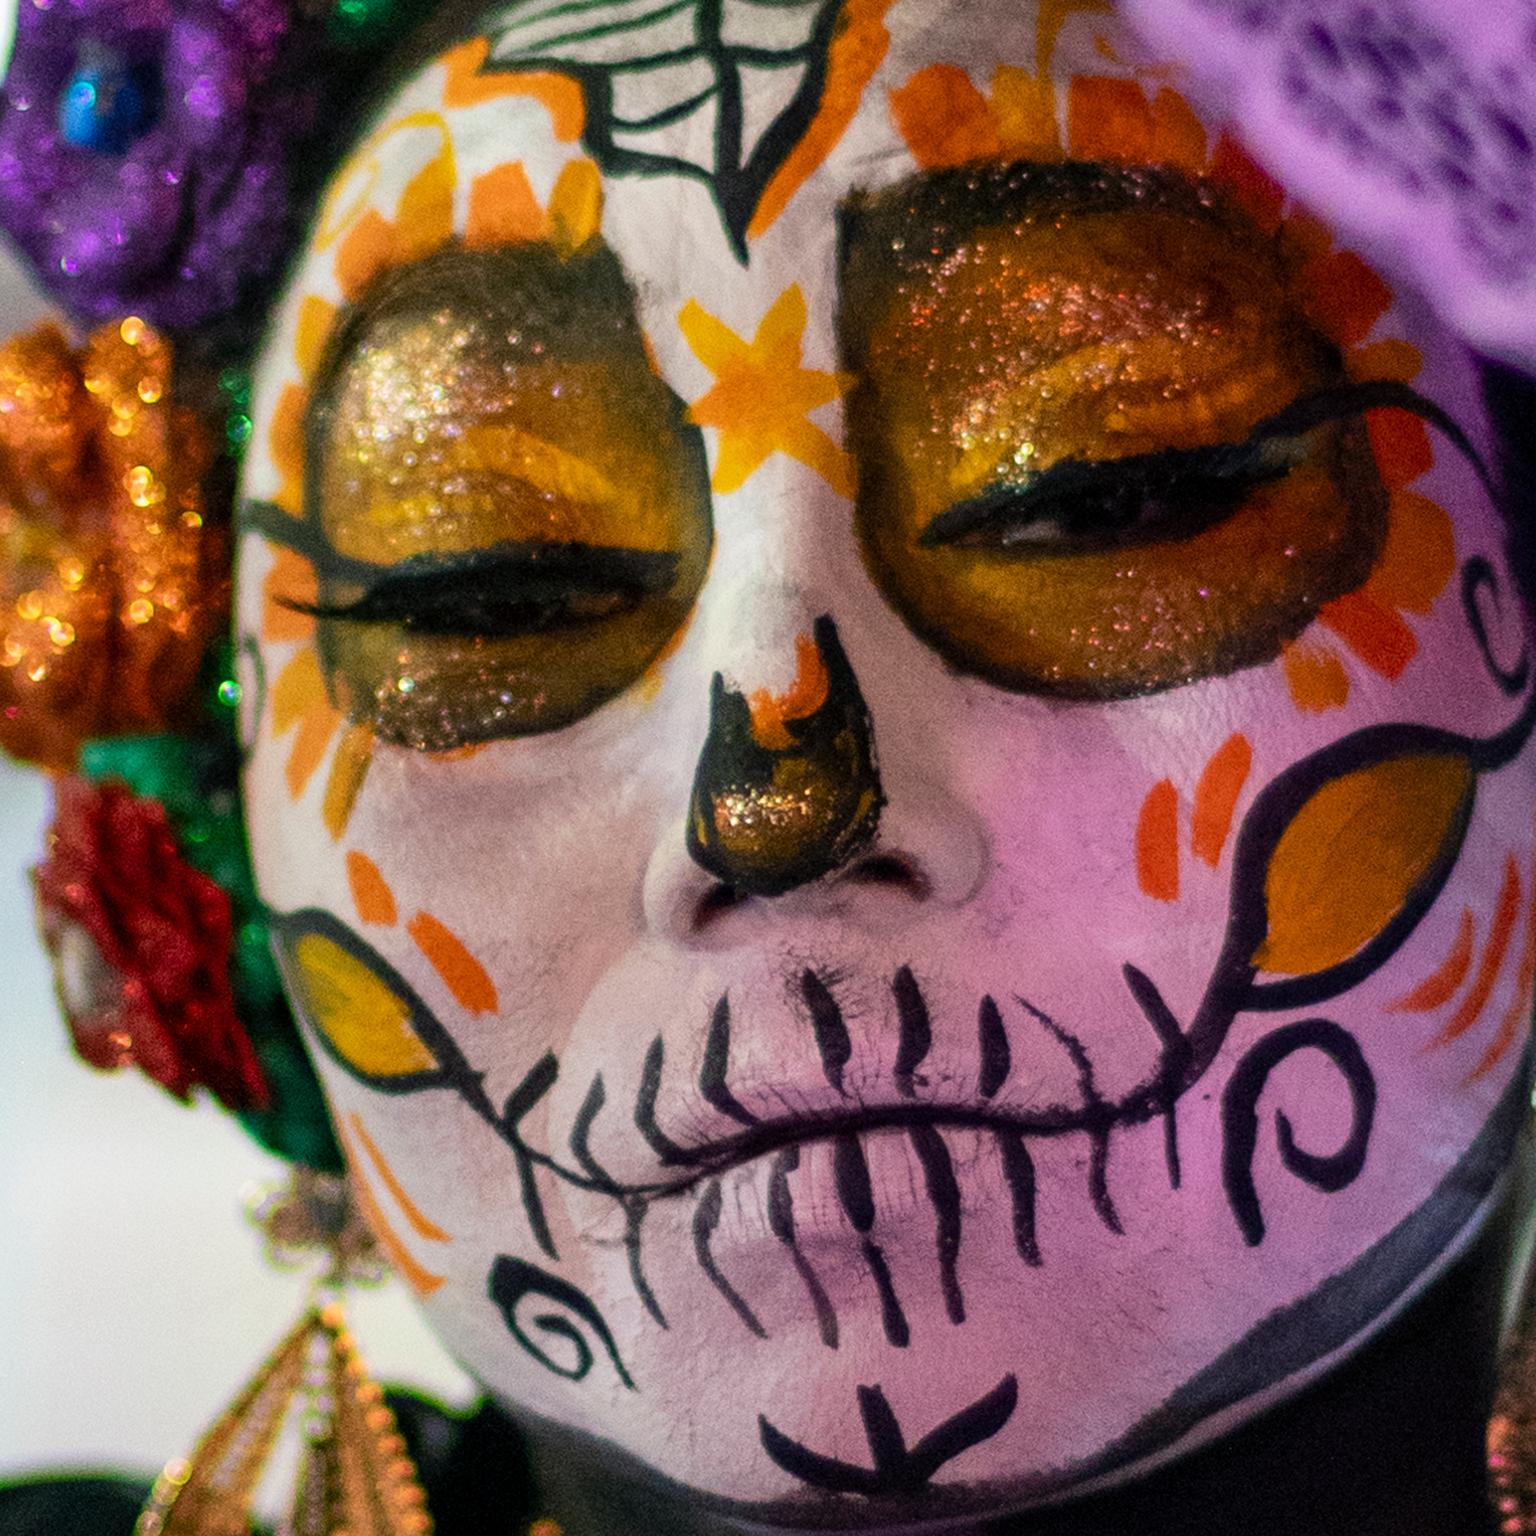 “Death with attitude”, Day of the Dead, Dia de los Muertos, Isla Mujeres, Mexico - Photograph by  Cosmo Condina